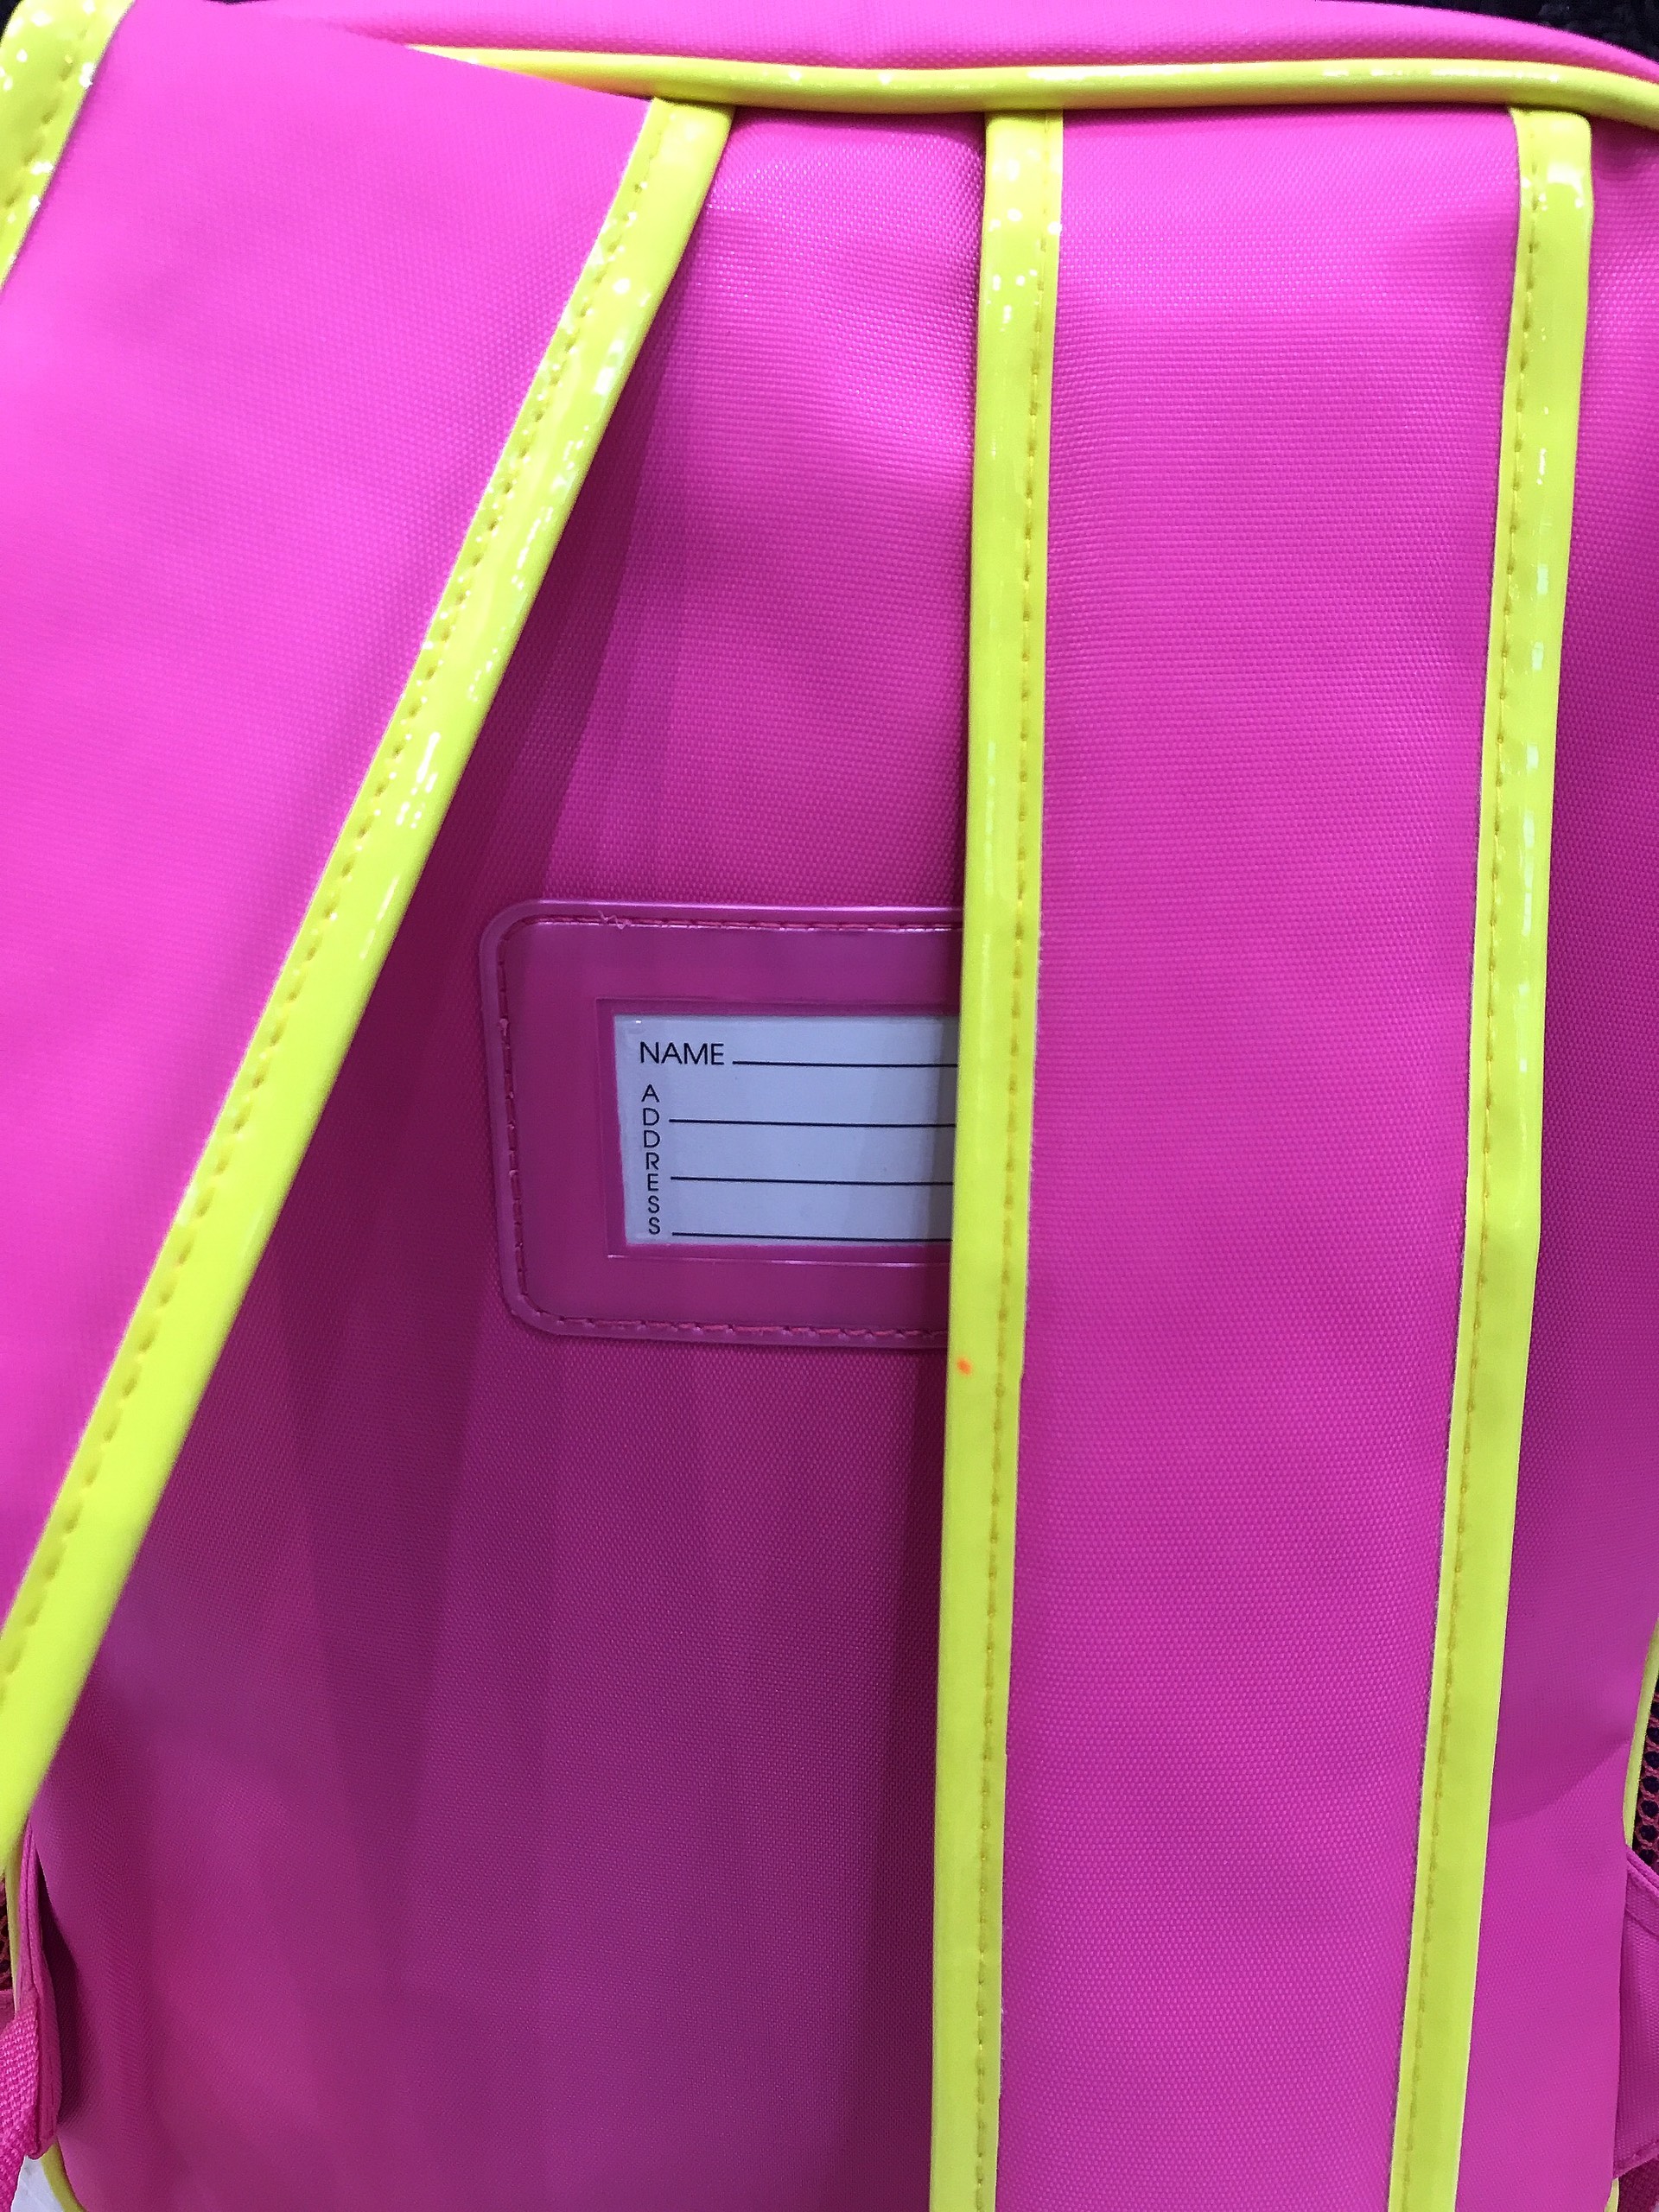 Balo, cặp táp 15'' 2 ngăn hình công chúa Sofia Princess chạy, màu hồng viền vàng - 730SFNG5002H (29x12x38cm)